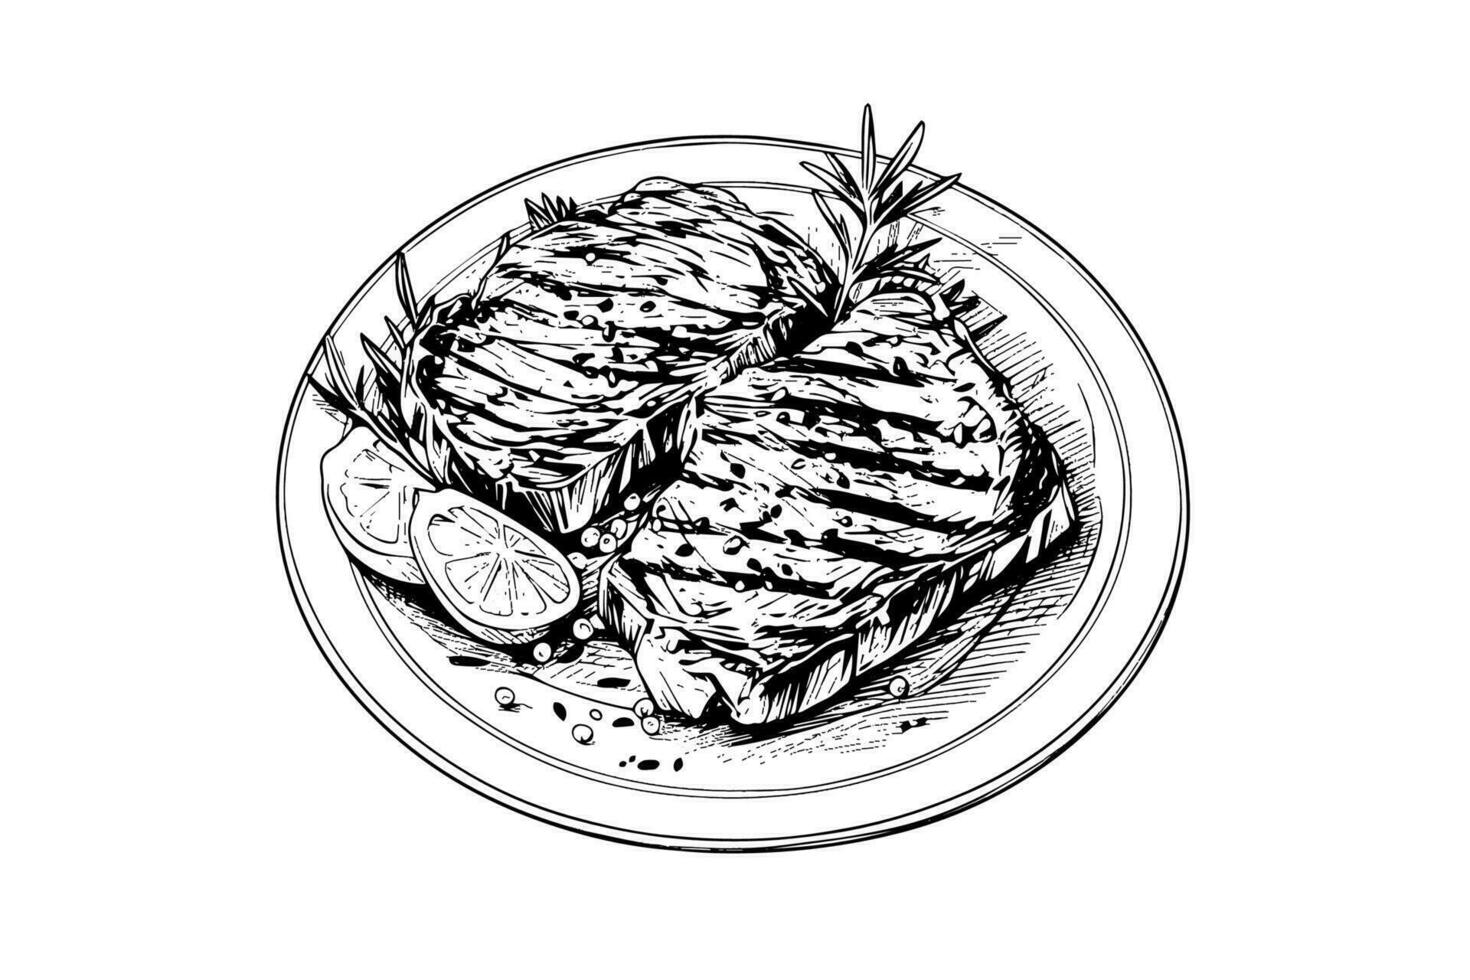 vlees steak Aan de bord. hand- tekening schetsen gravure stijl vector illustratie